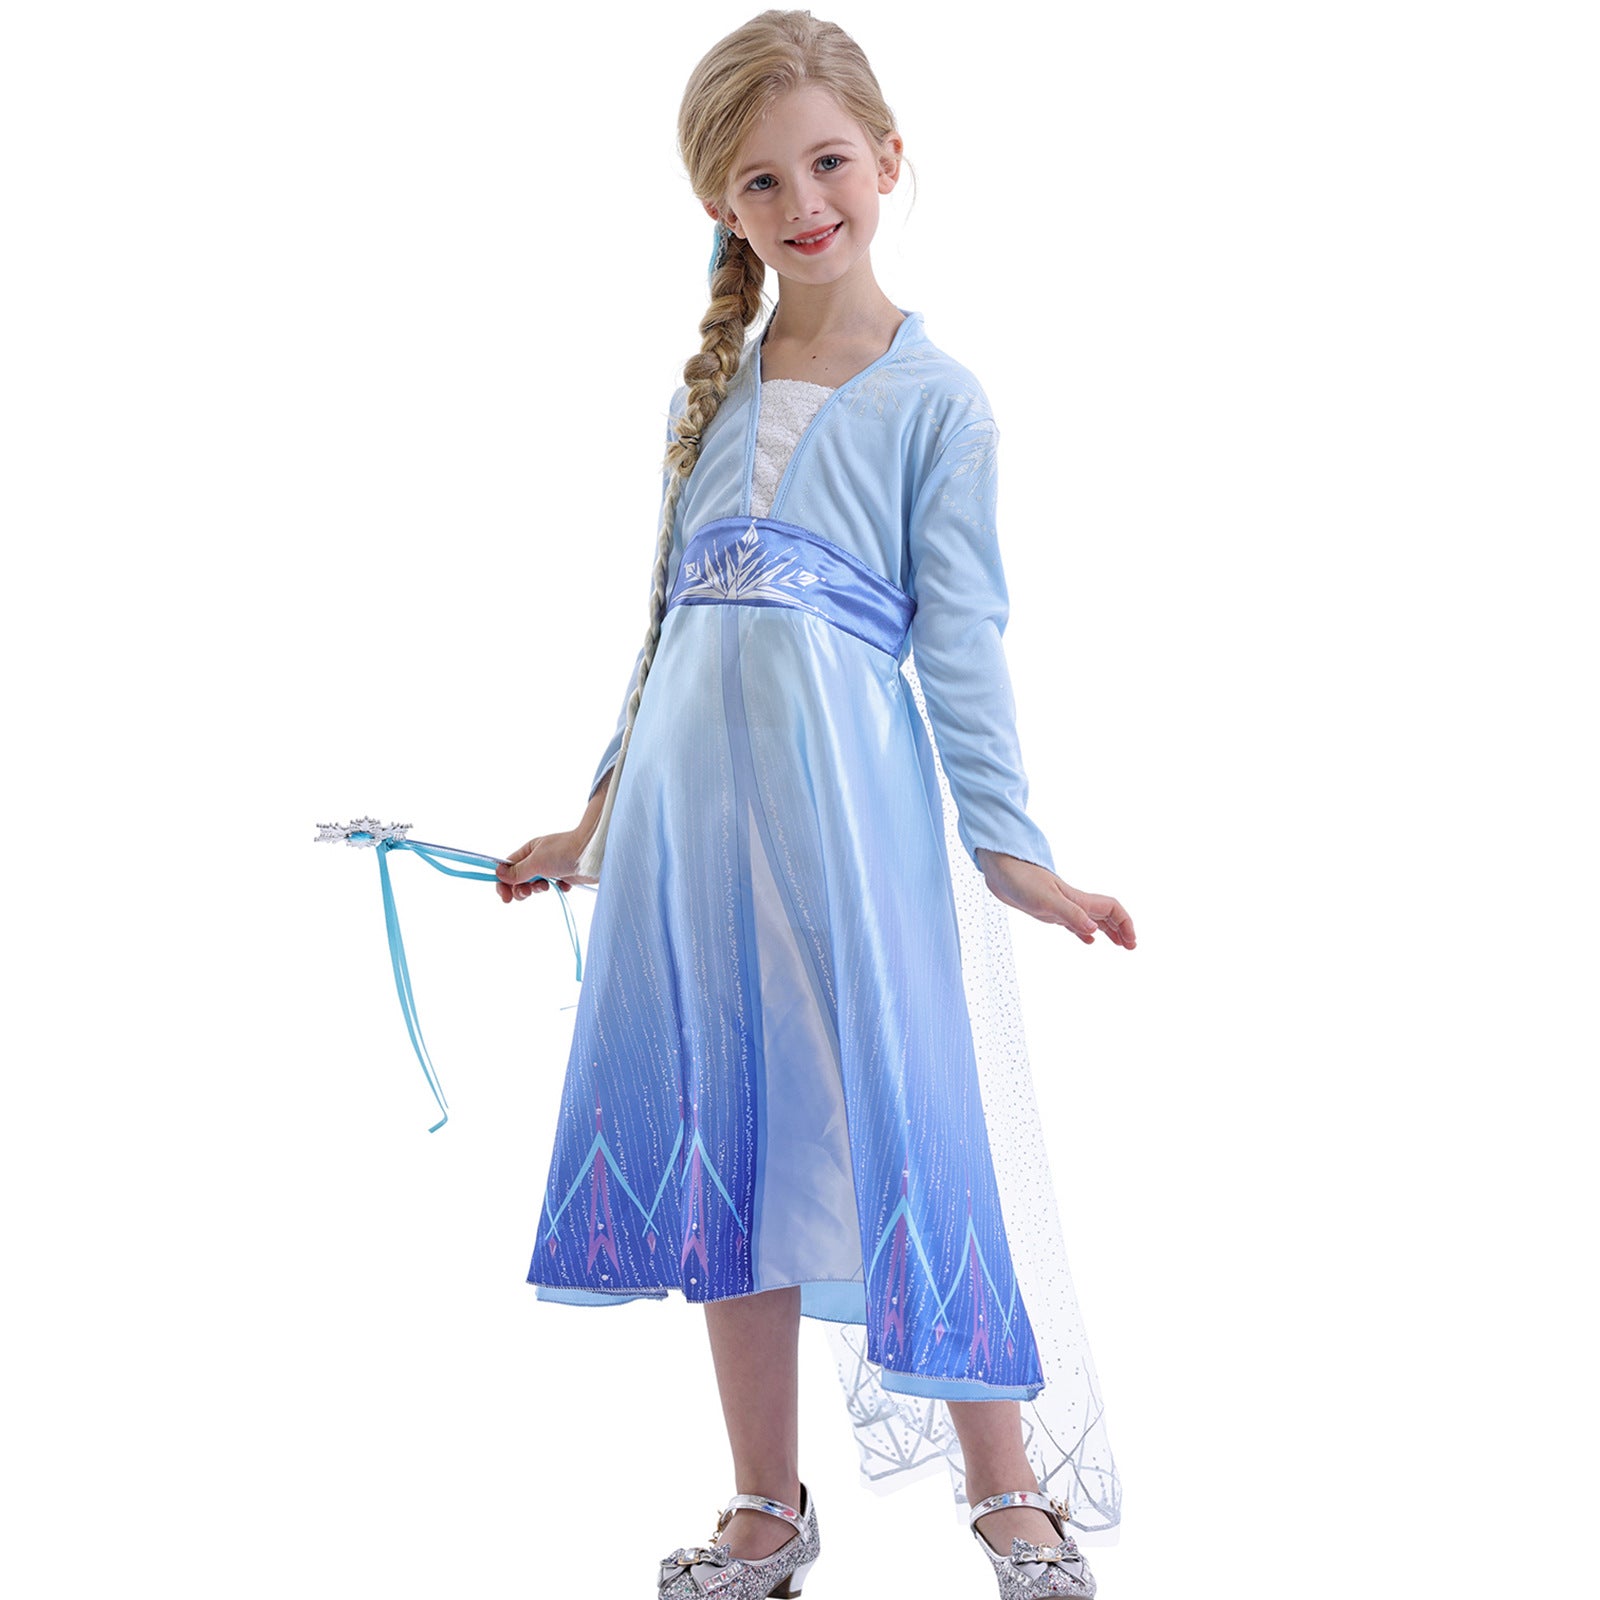 Kids Elsa Dress Cosplay Princess Dress Girls Queen Party Dress Up Costume